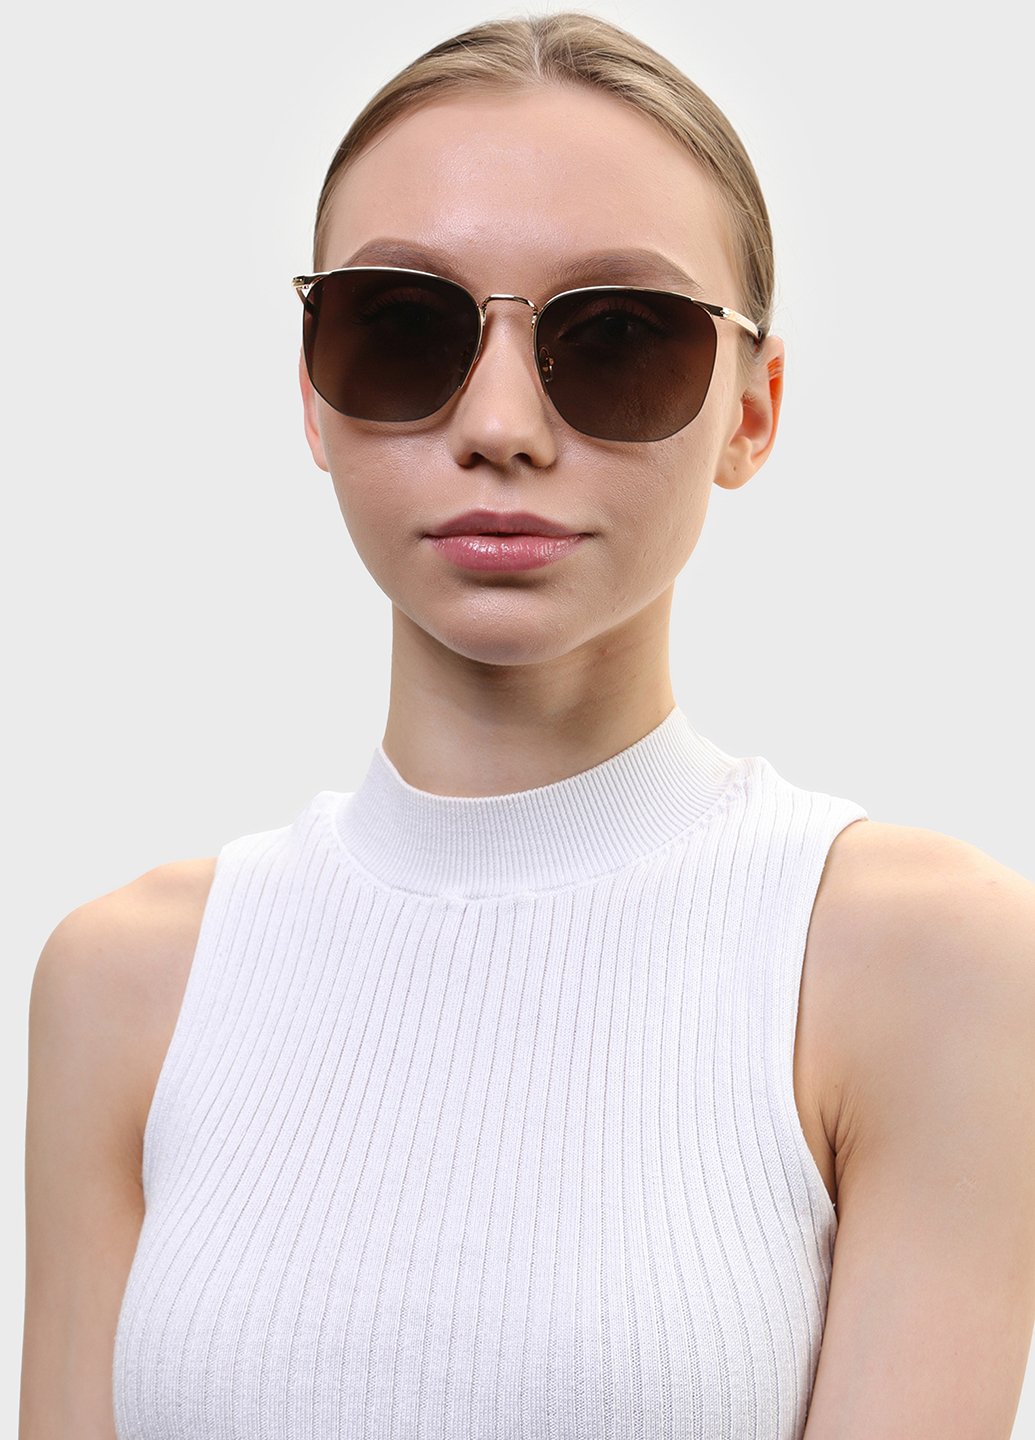 Купить Женские солнцезащитные очки Merlini с поляризацией S31809P 117016 - Золотистый в интернет-магазине